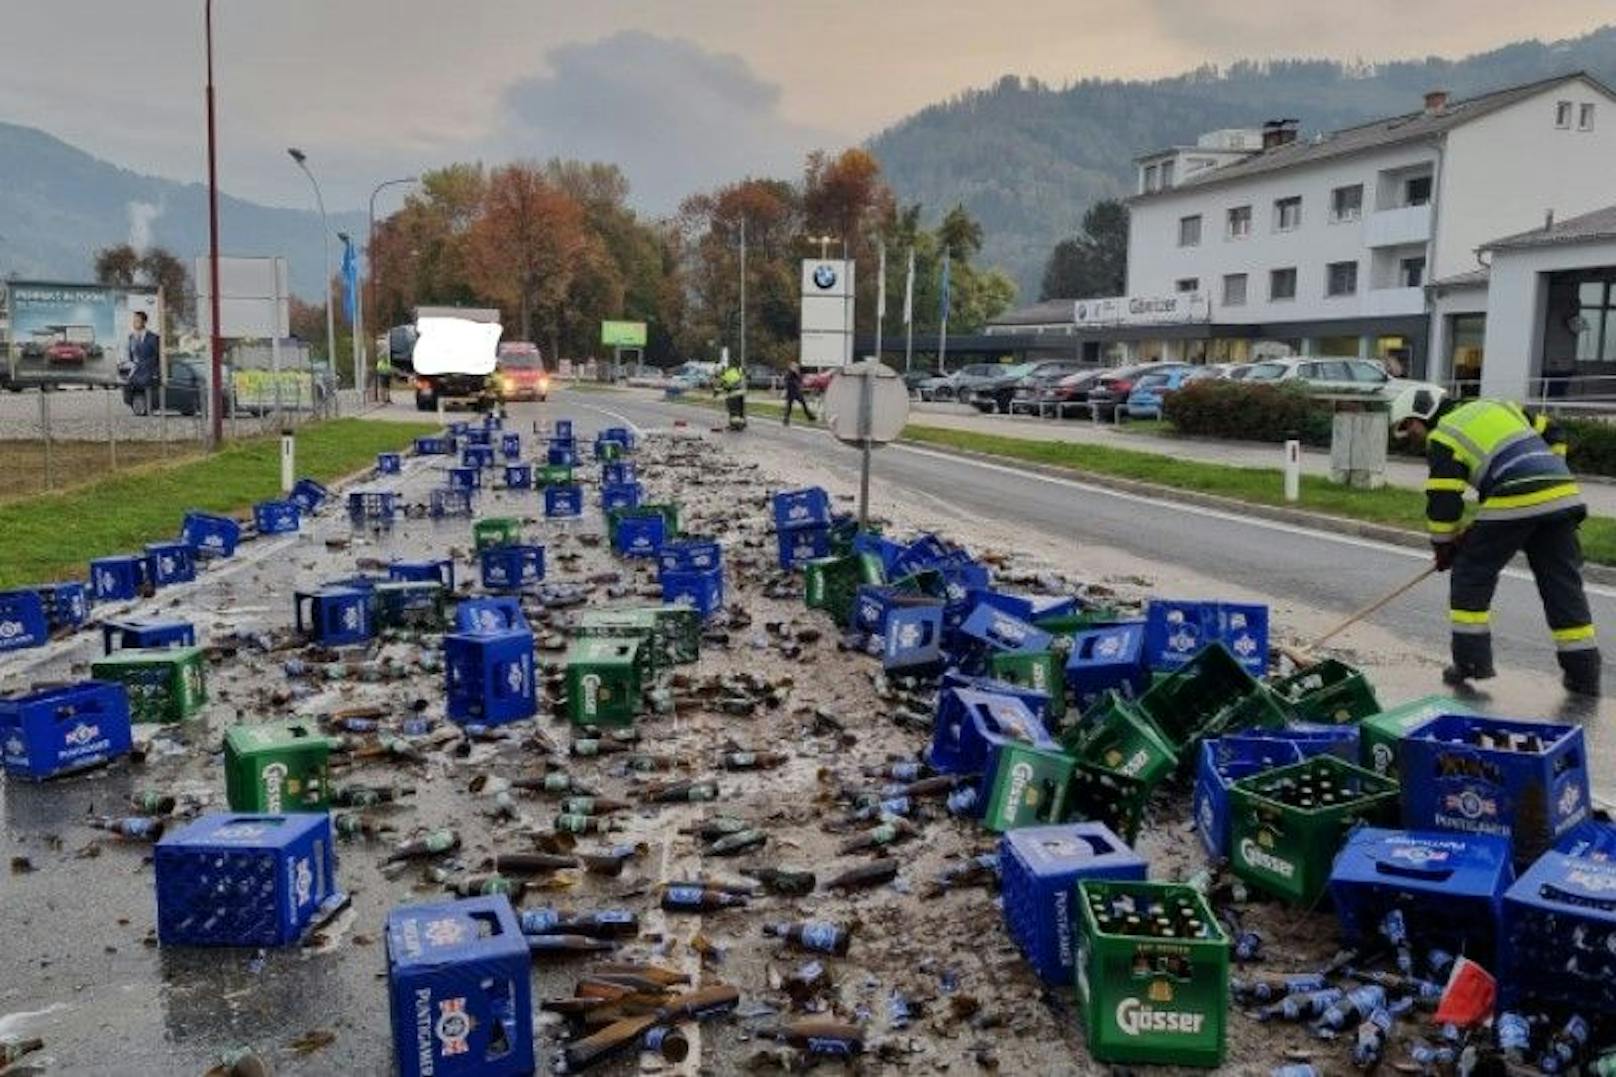 Hopfen und Malz verloren: 80 Kasten Bier fielen aus Lkw